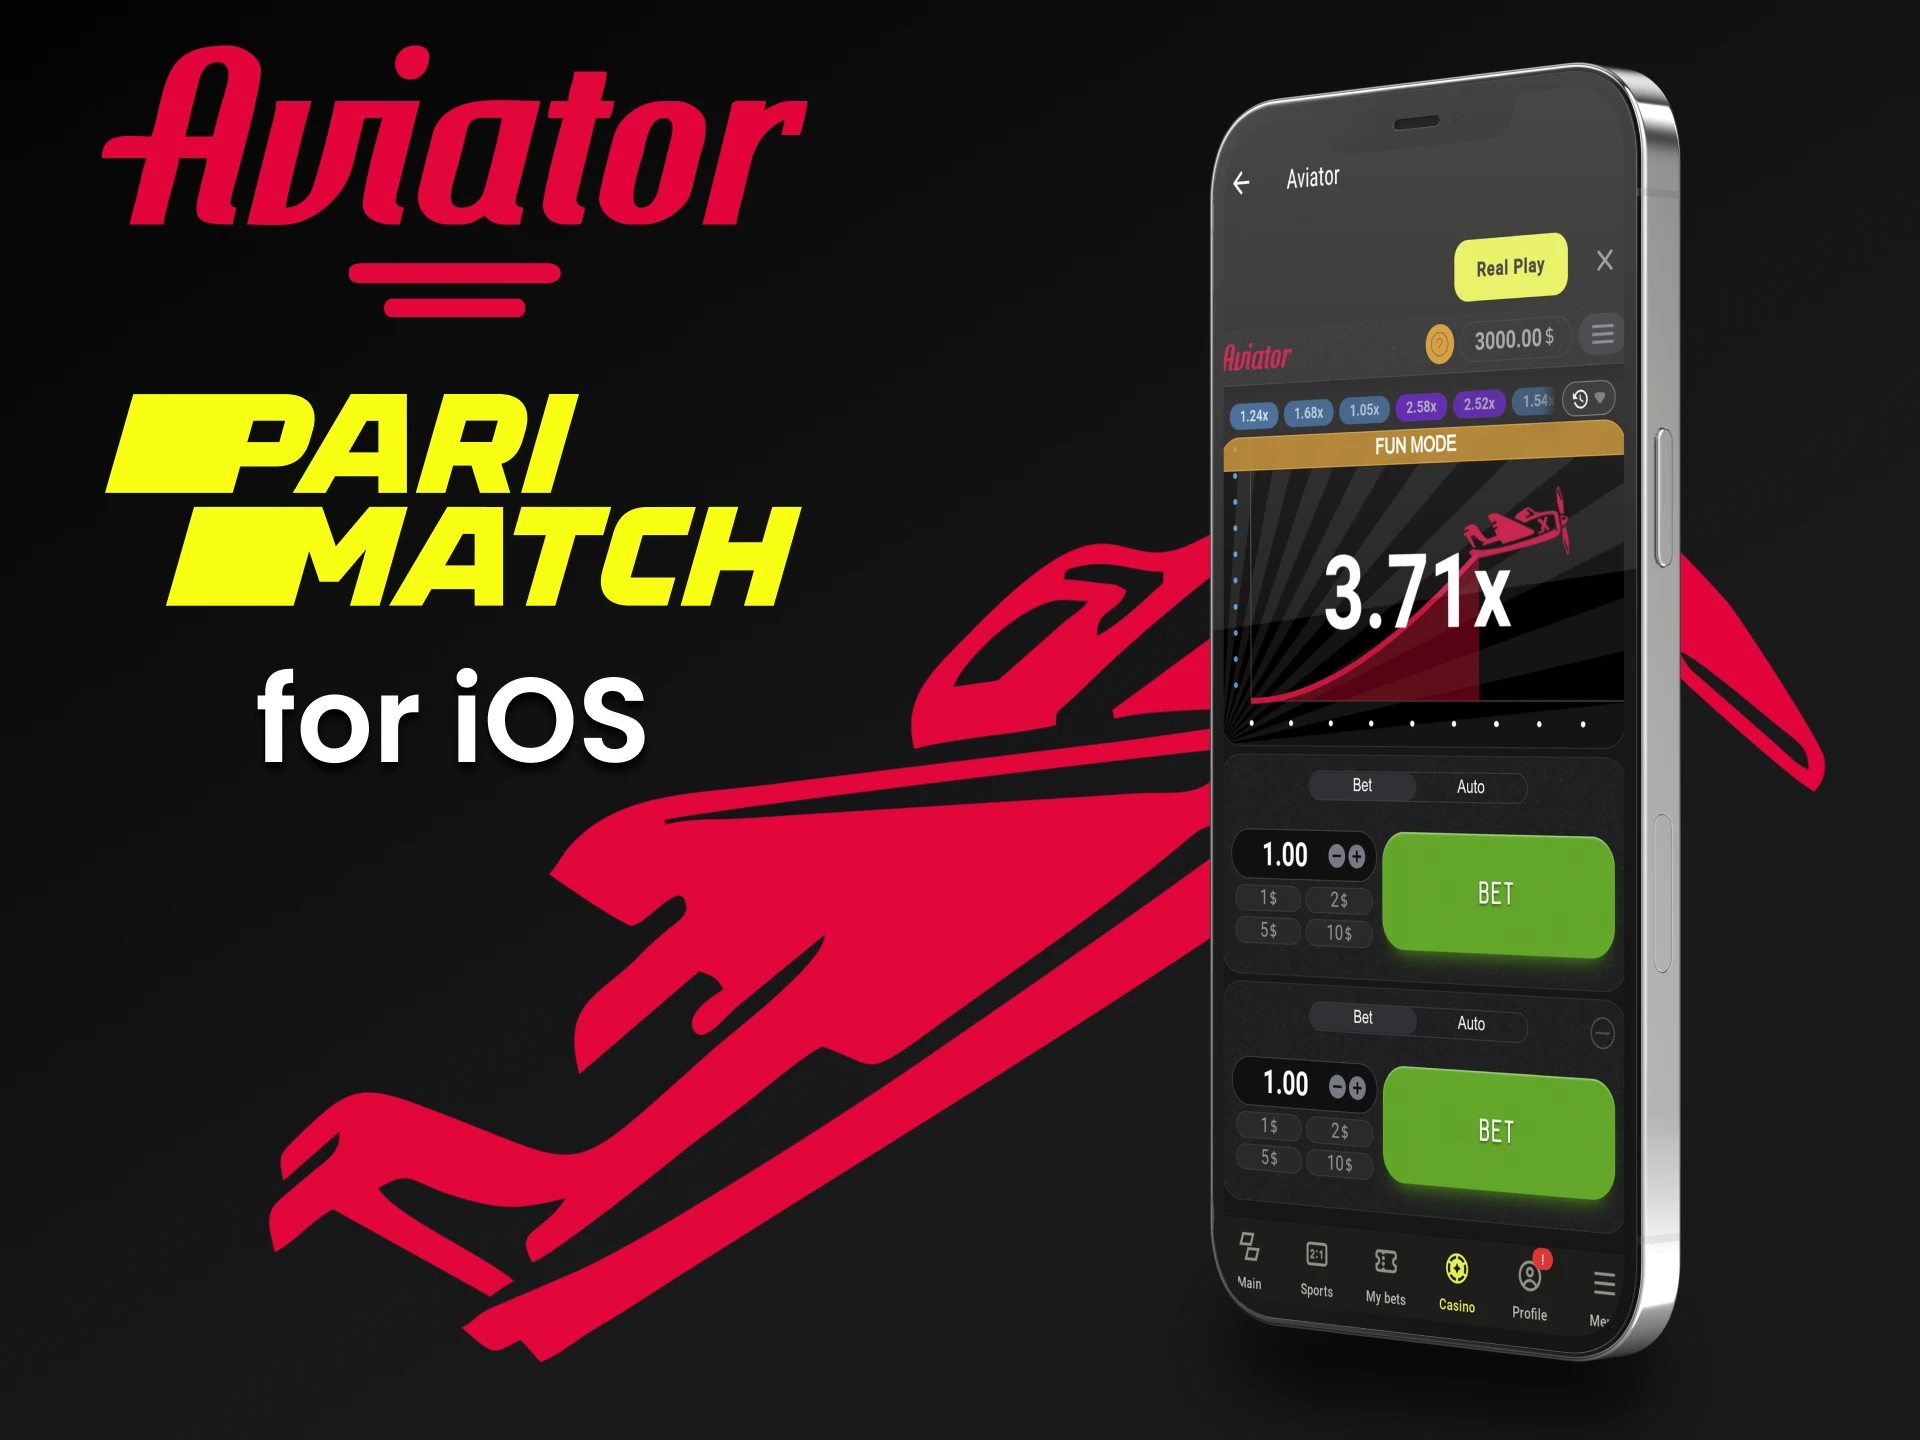 Reproduza o Aviator da Parimatch em seu dispositivo iOS.